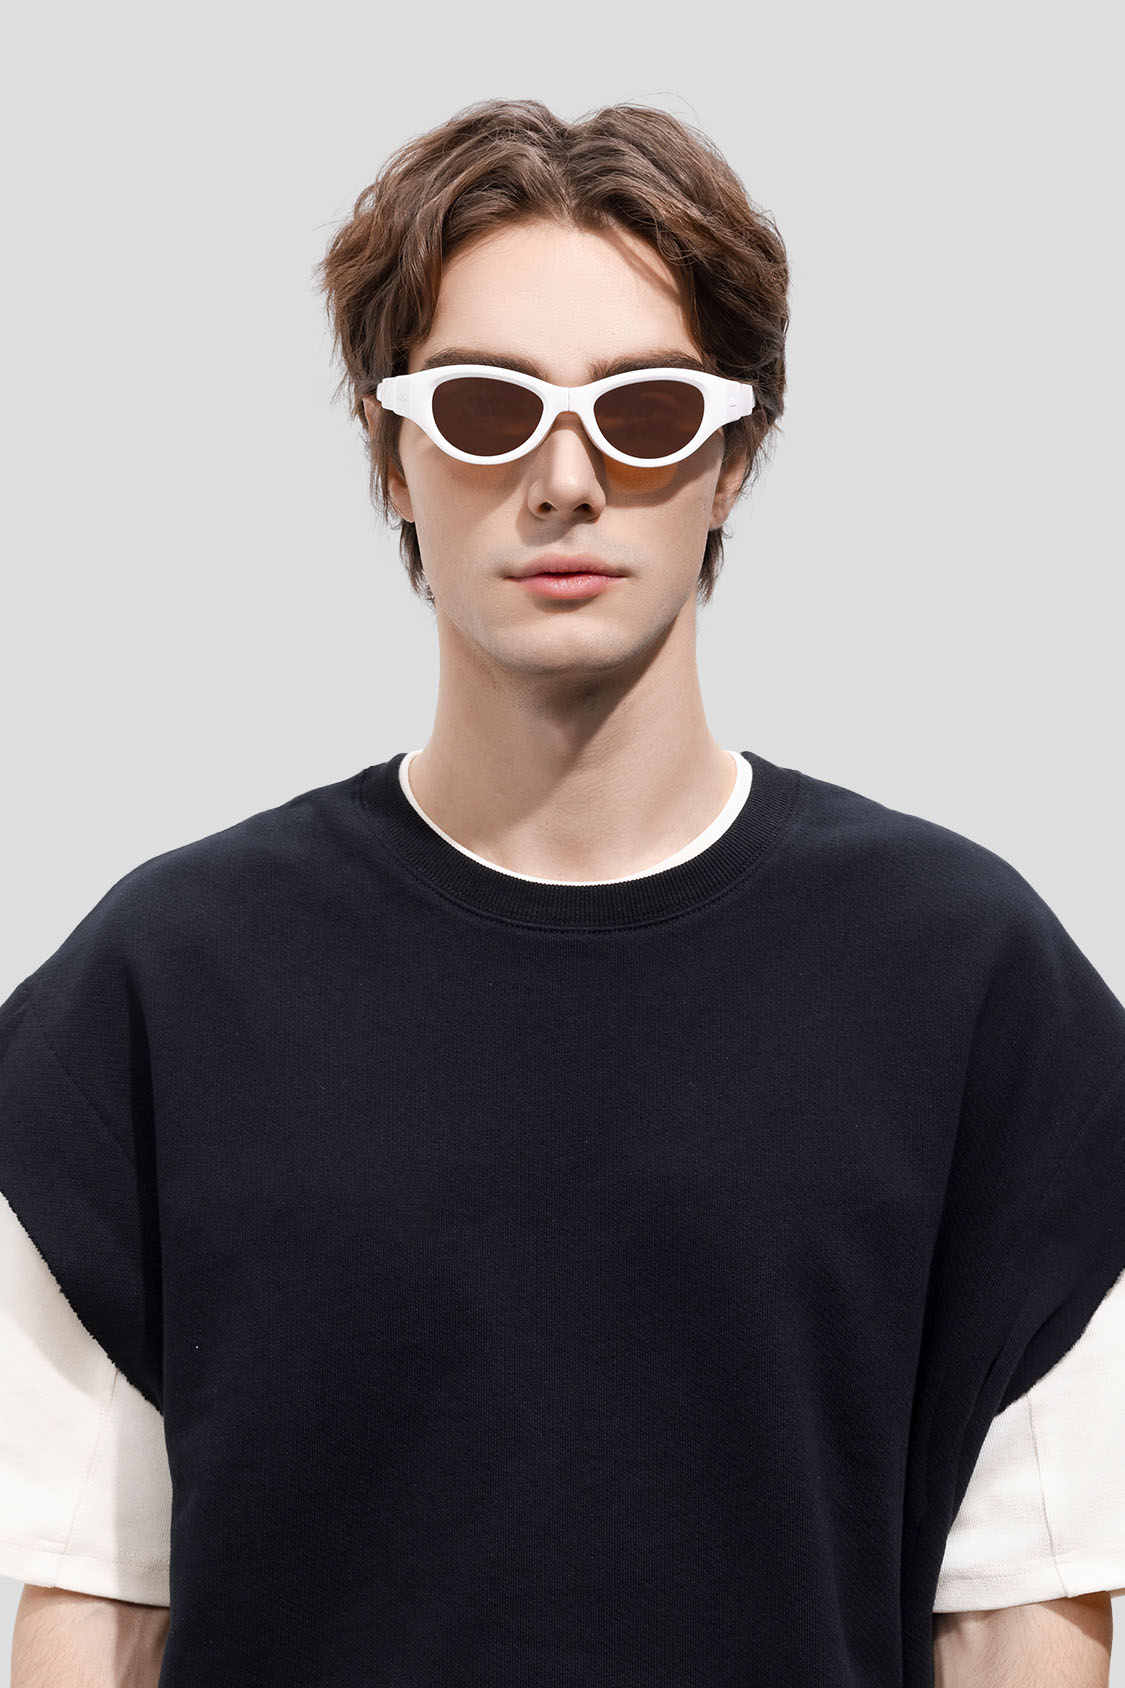 beneunder women's folding sunglasses #color_white